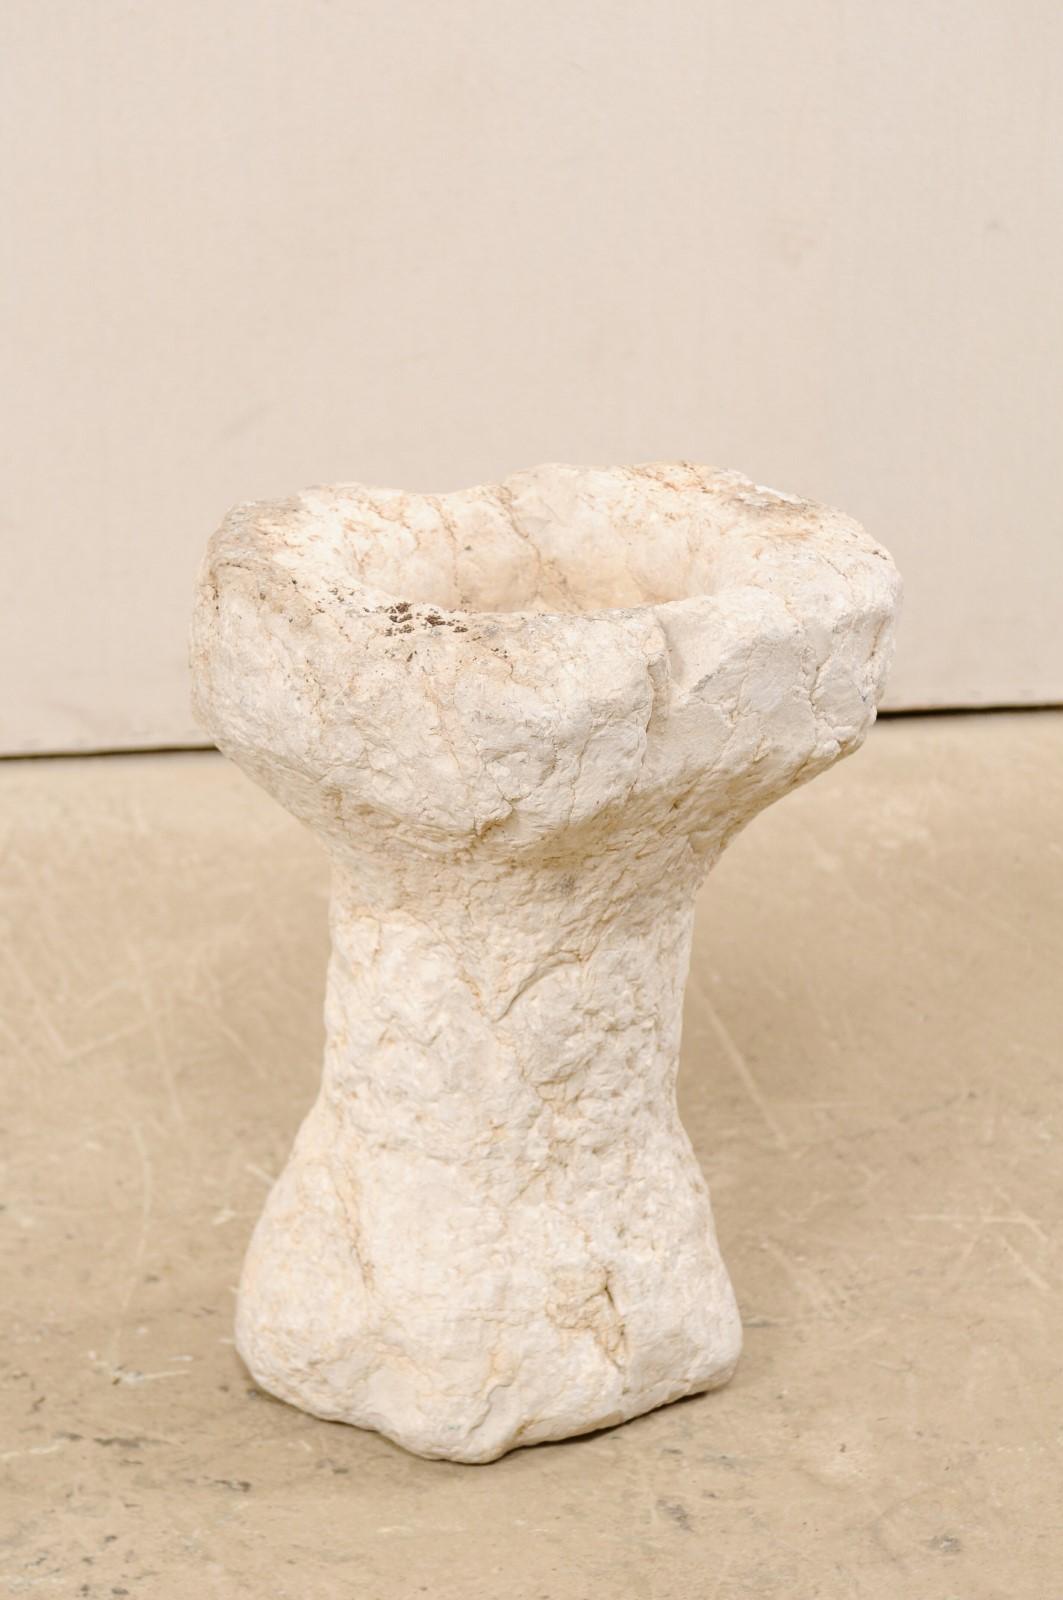 Ein spanisches Taufsteingefäß aus dem 19. Jahrhundert, möglicherweise älter. Dieses antike Gefäß aus Spanien, das ursprünglich als Taufbecken verwendet wurde, besteht aus einem rustikal geschnitzten Steinkorpus mit abgerundetem Becken, das auf einem